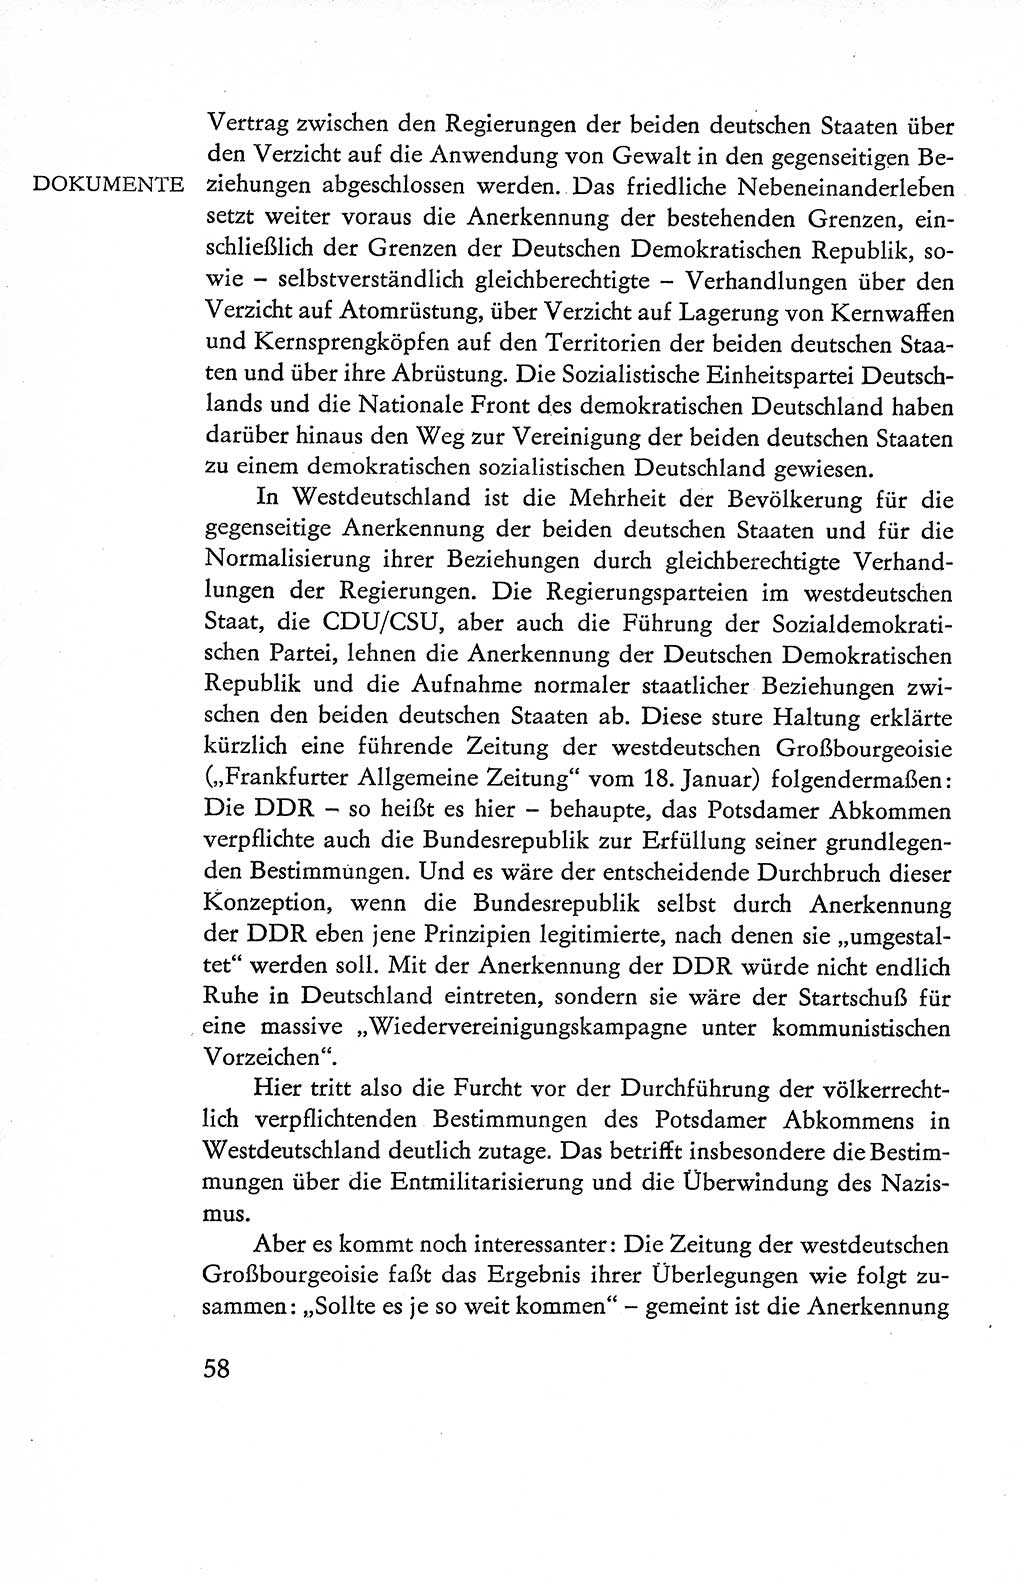 Verfassung der Deutschen Demokratischen Republik (DDR), Dokumente, Kommentar 1969, Band 1, Seite 58 (Verf. DDR Dok. Komm. 1969, Bd. 1, S. 58)